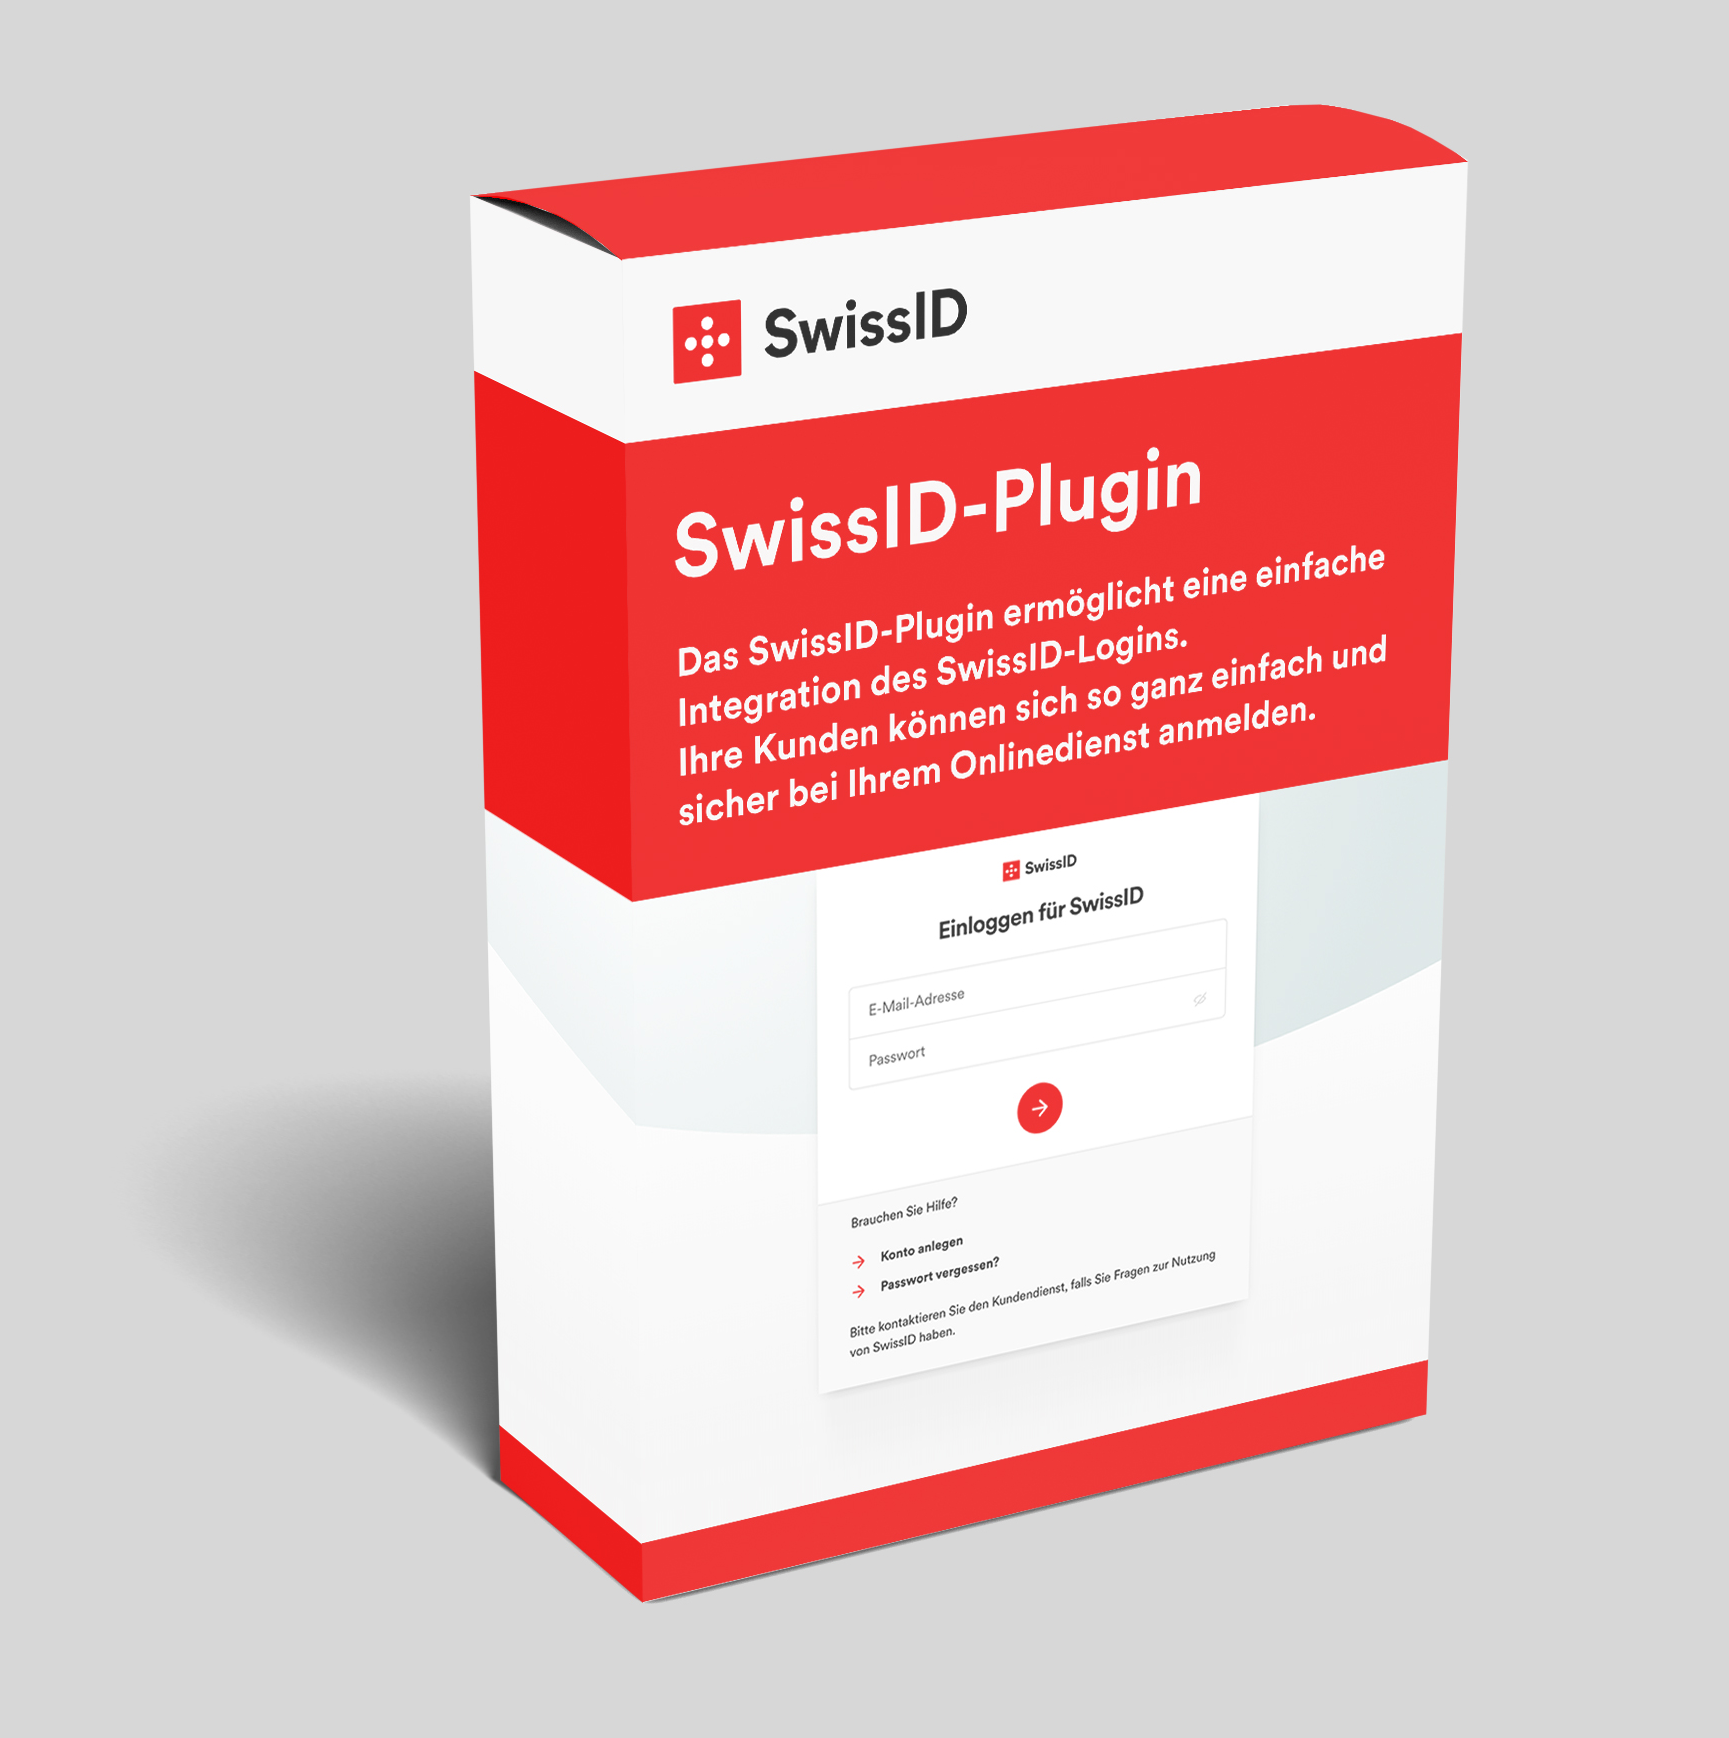 Visualisation of the SwissID plug-in